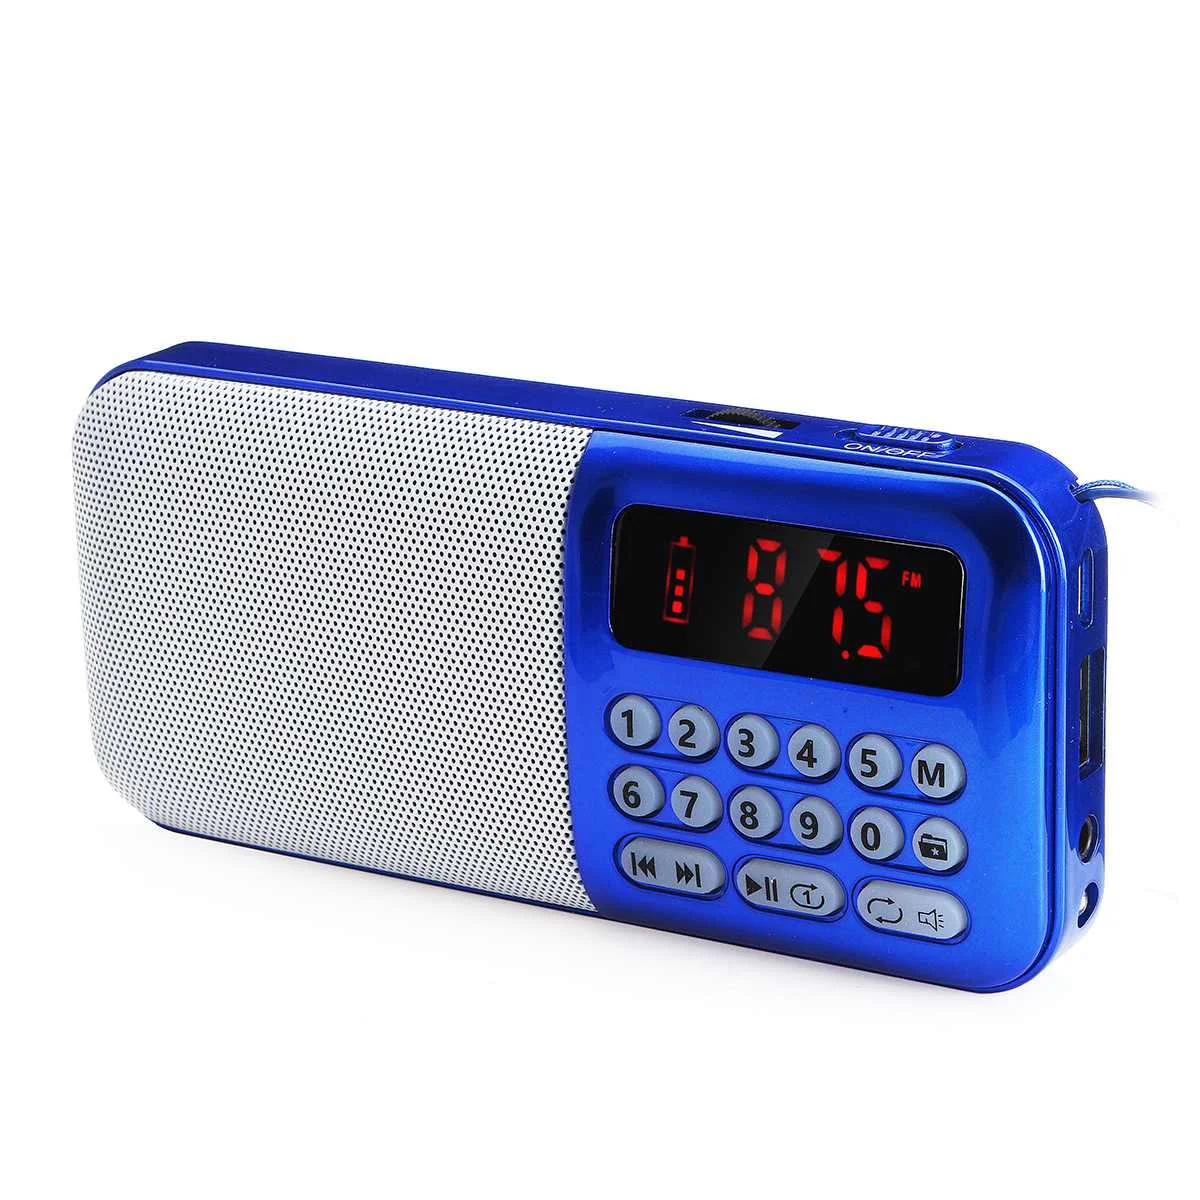 Портативный радио портативный цифровой FM USB TF MP3-плеер динамик светодиодный свет DC 5 в FM радио TF карта USB дополнительный громкоговоритель аудио плеер - Цвет: Синий